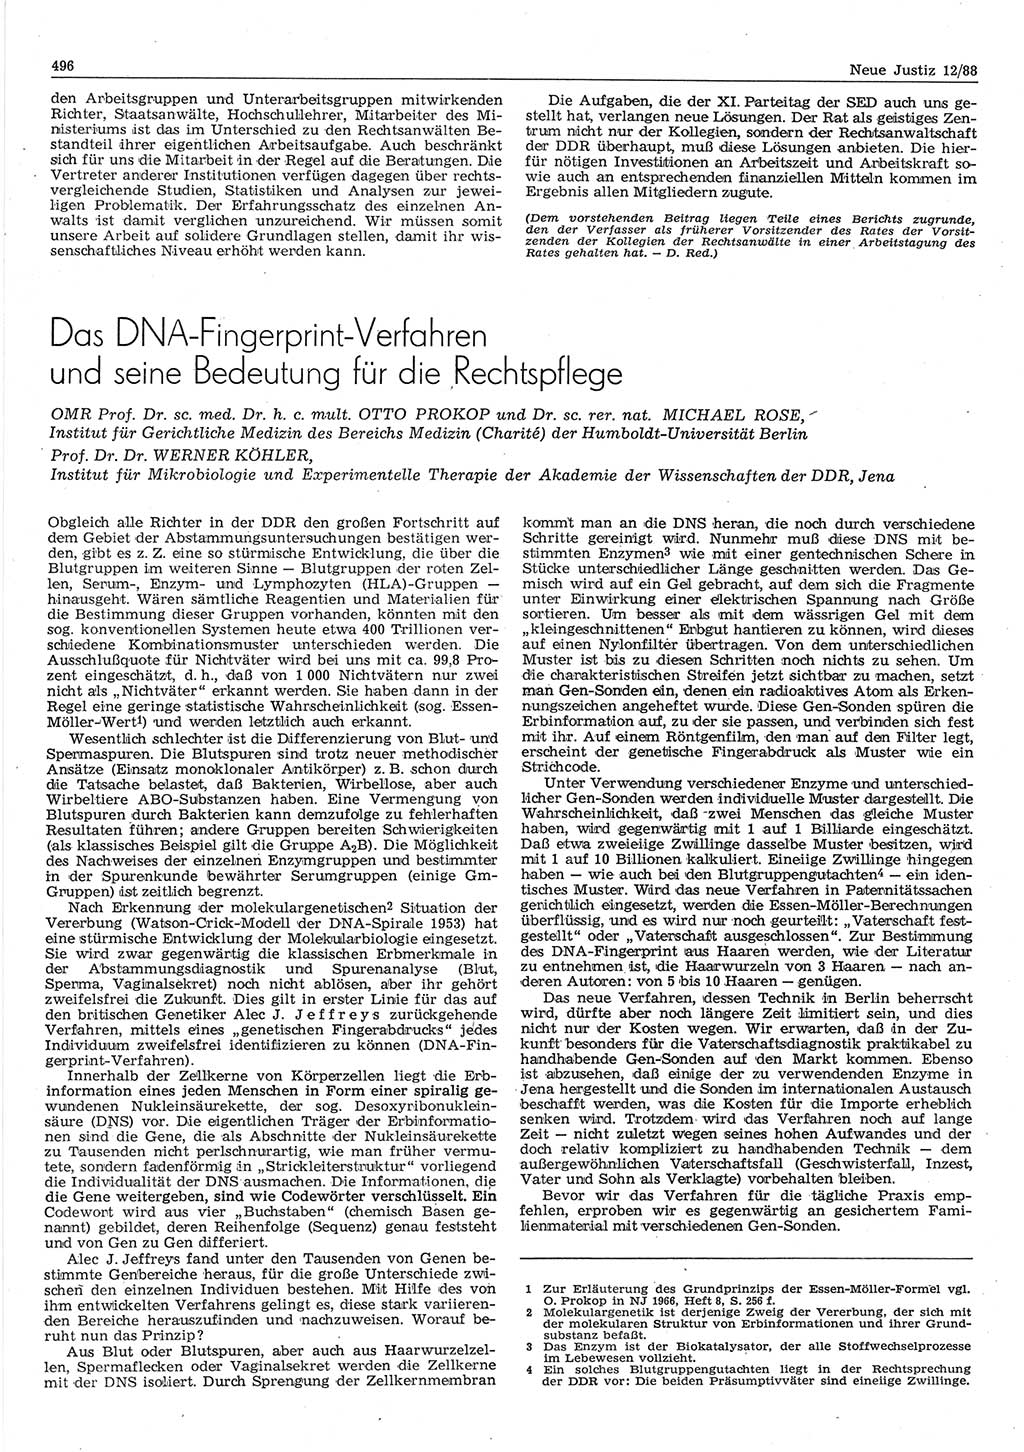 Neue Justiz (NJ), Zeitschrift für sozialistisches Recht und Gesetzlichkeit [Deutsche Demokratische Republik (DDR)], 42. Jahrgang 1988, Seite 496 (NJ DDR 1988, S. 496)